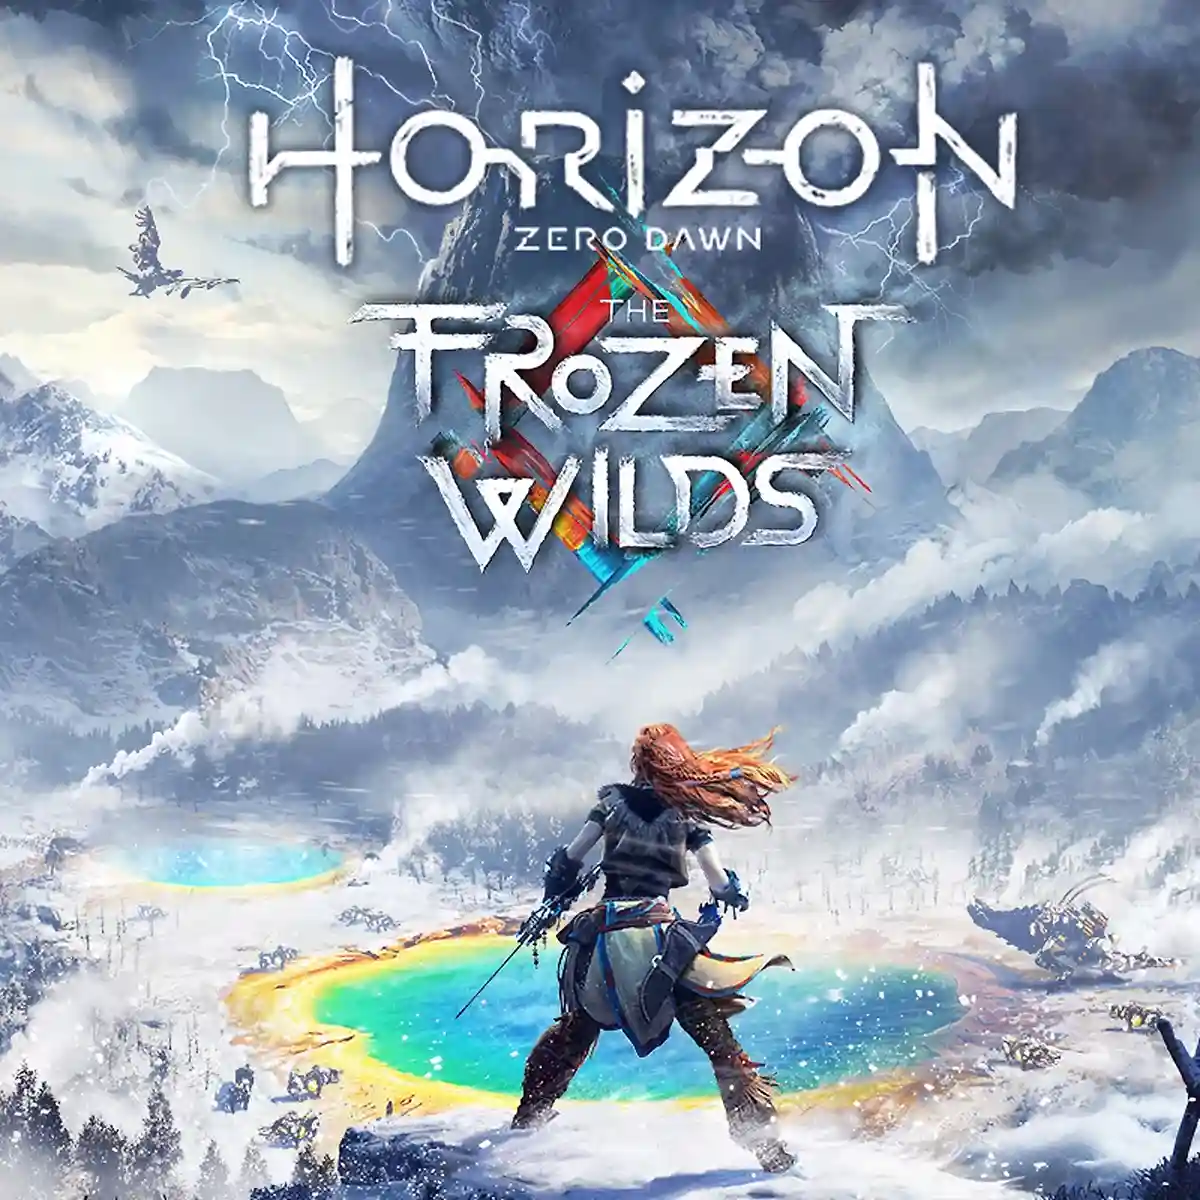 В планы Sony входят хорошие продажи игры Horizon Zero Dawn. Фото: playstation.com